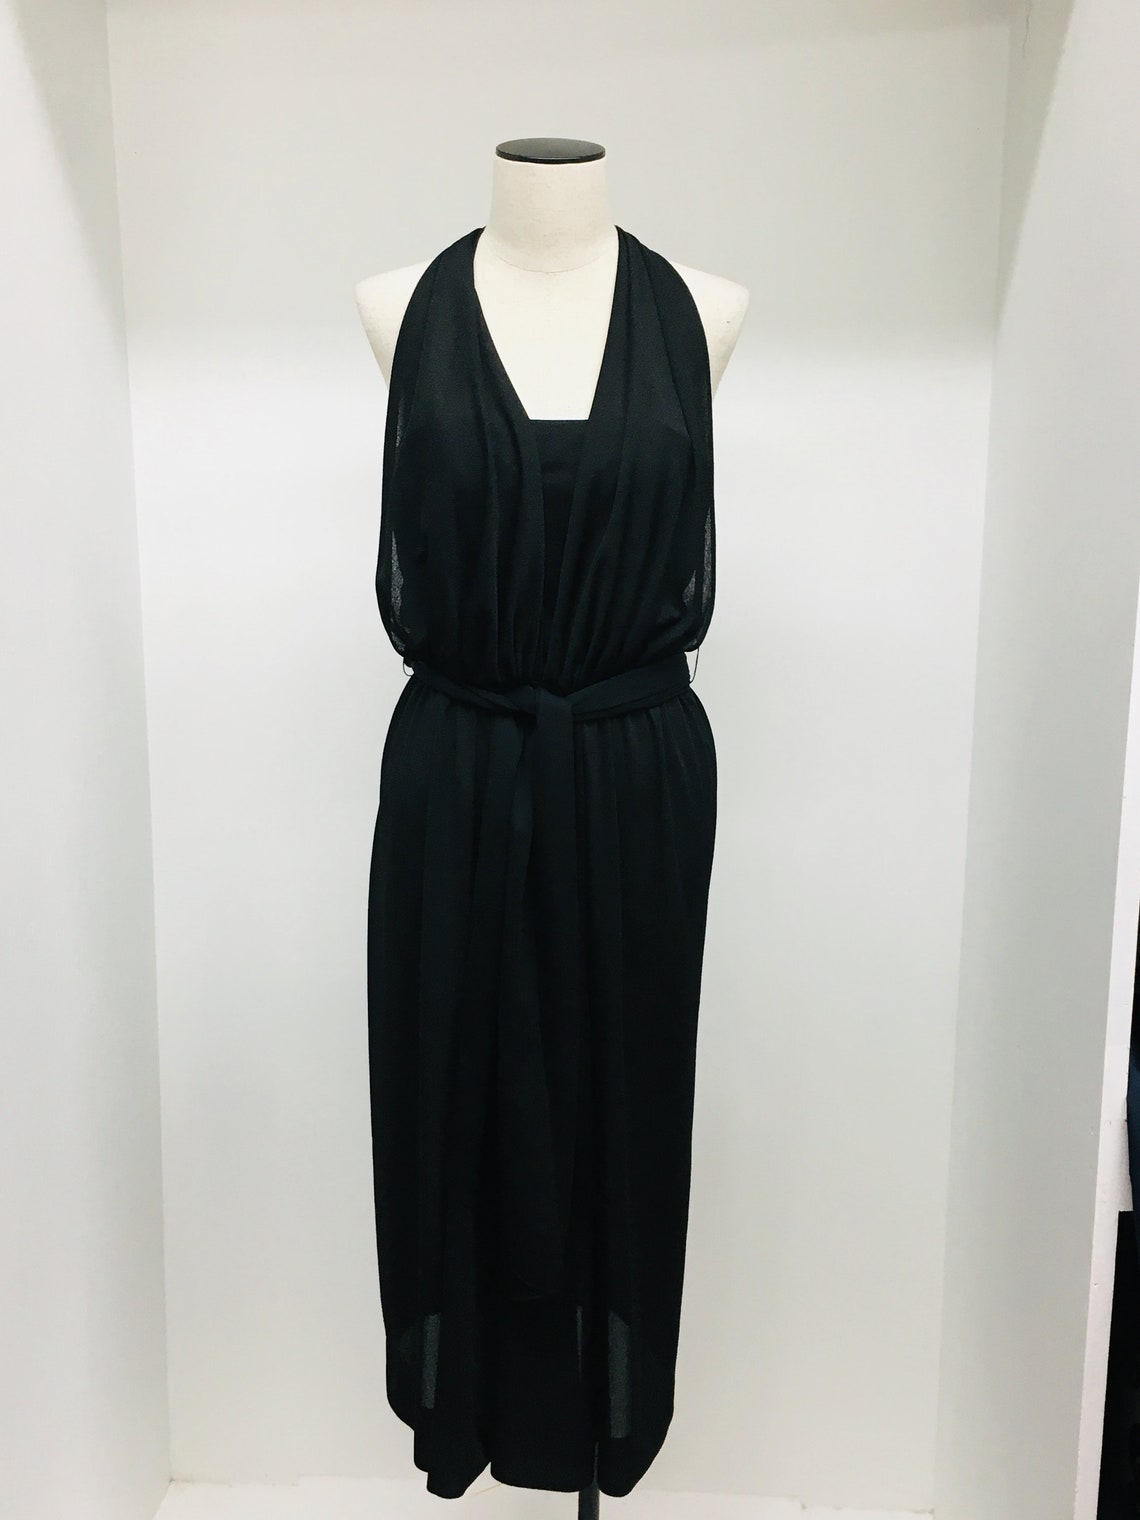 DAVID MORRIS Vintage Halter Black Crepe Dress Exquisite and | Etsy